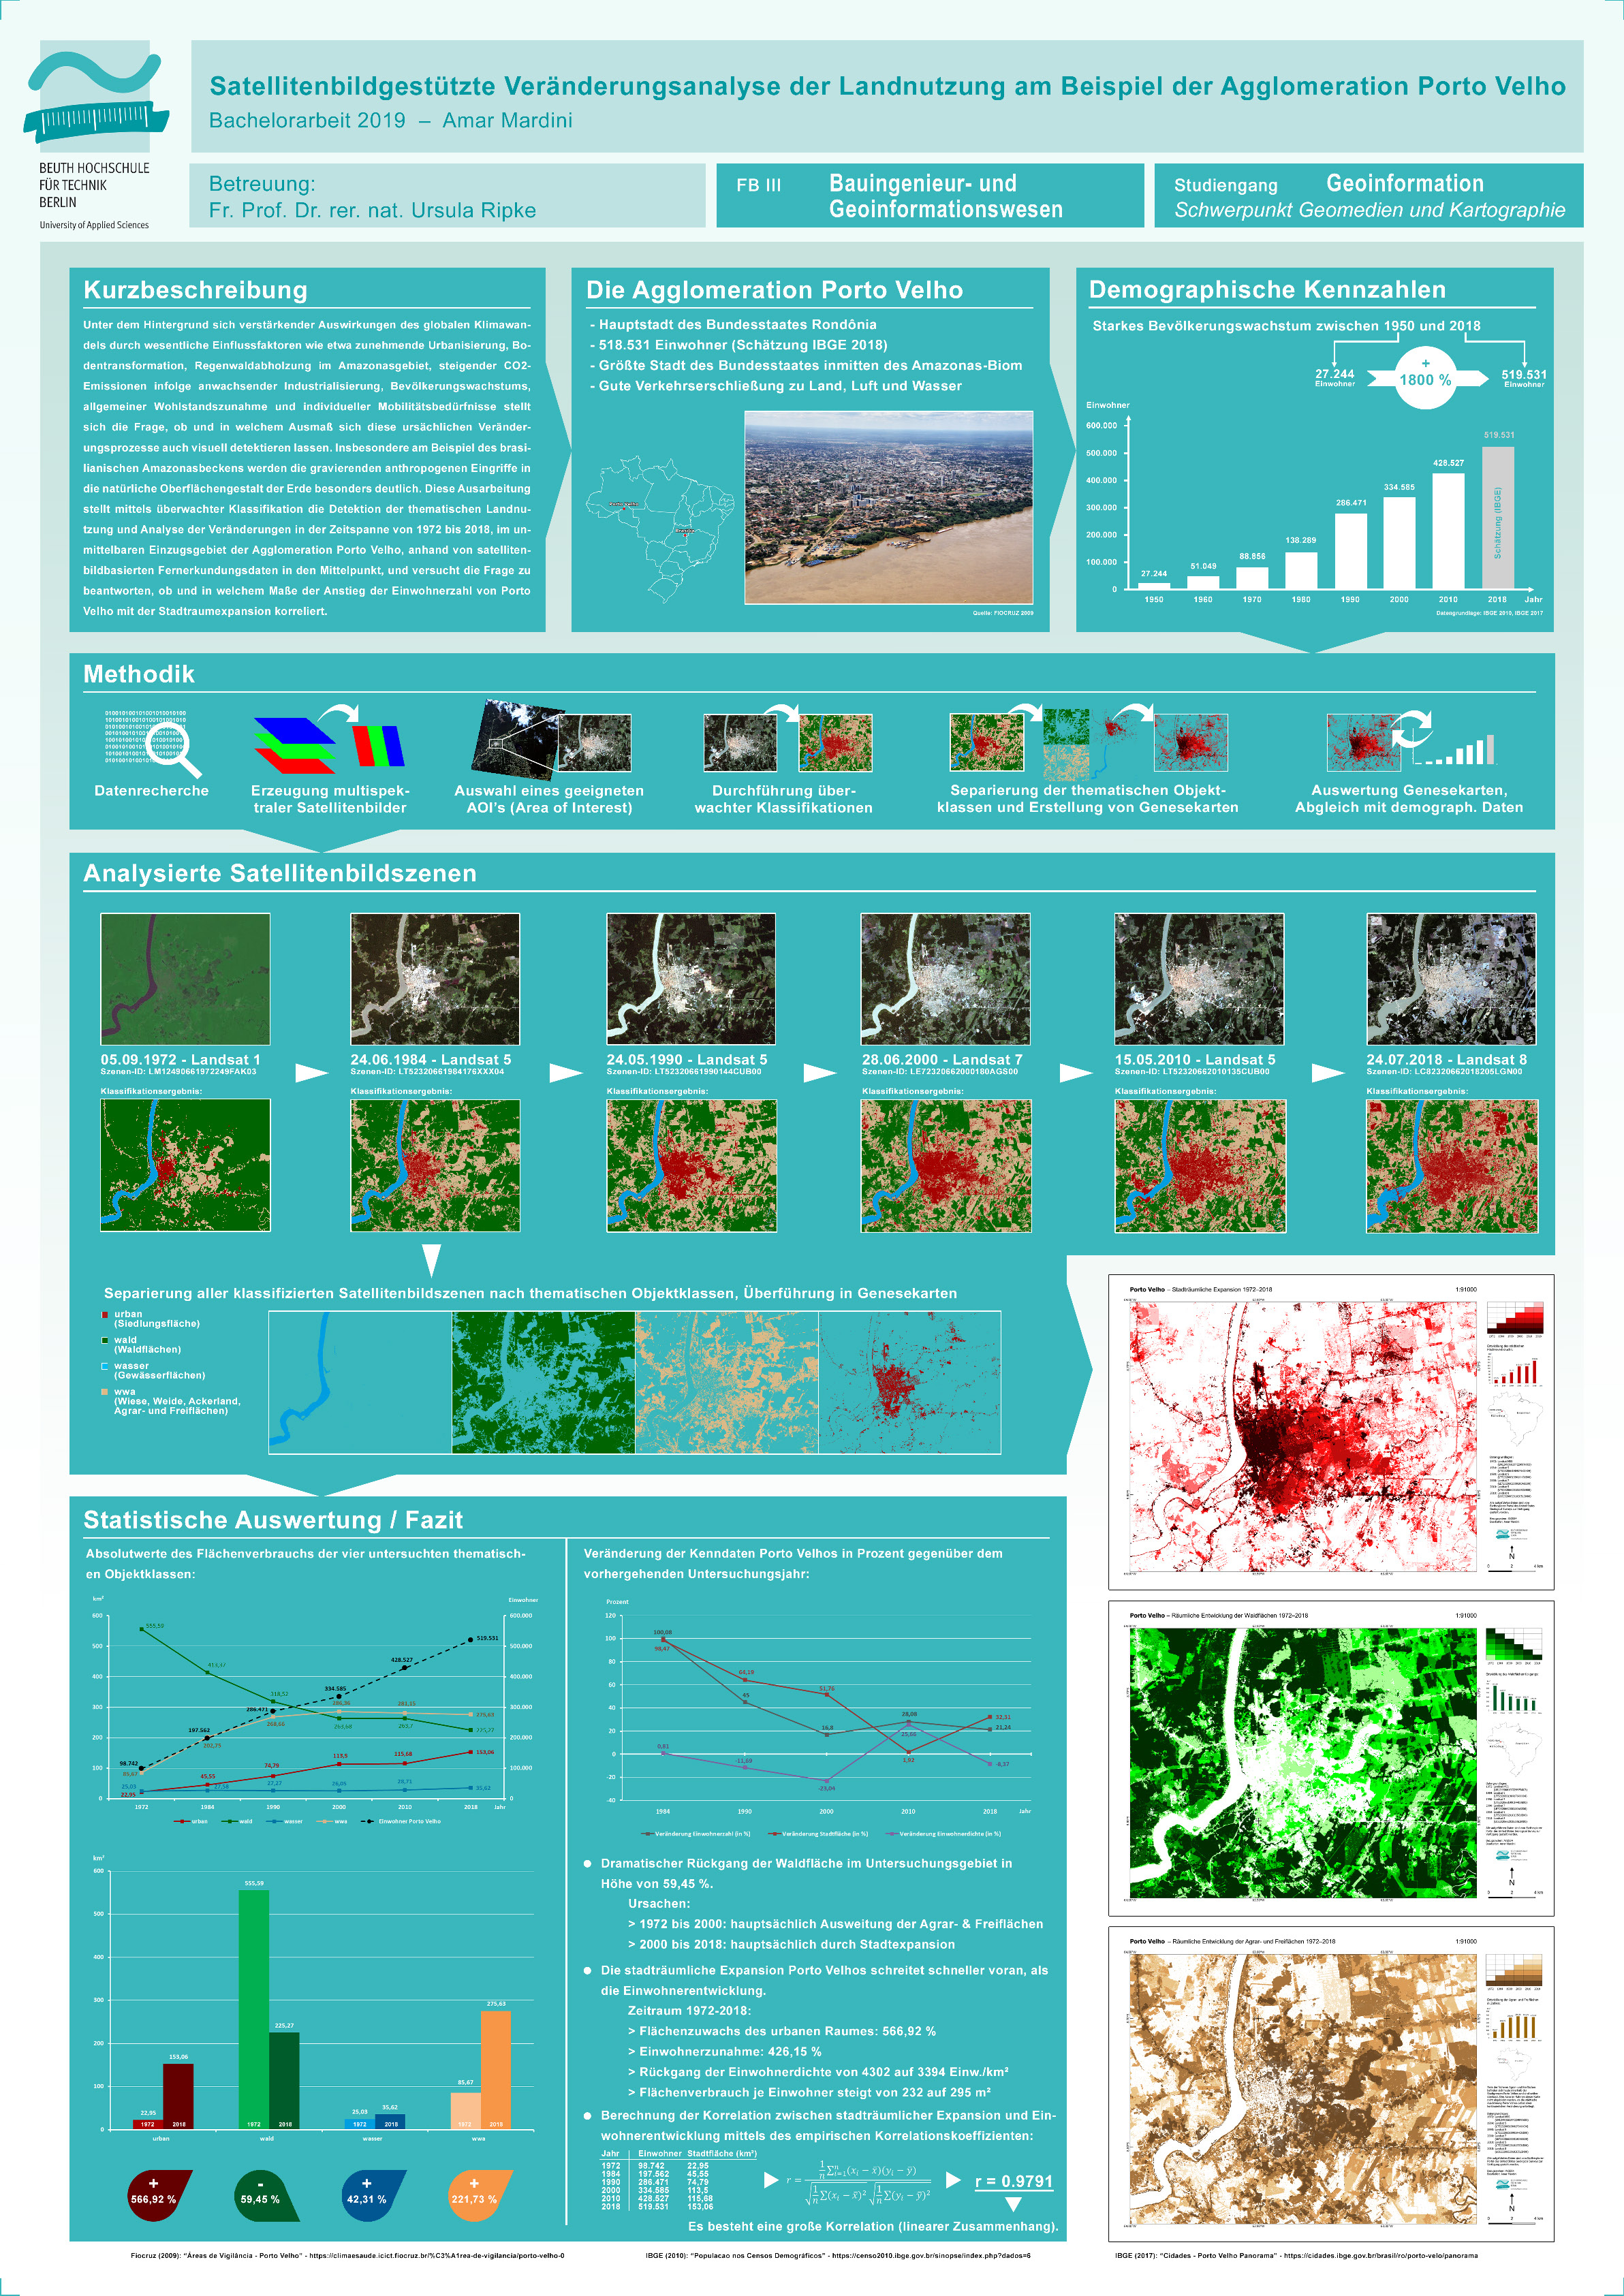 Poster: Satellitenbildgestützte Veränderungsanalyse der Landnutzung am Beispiel der Agglomeration Porto Velho